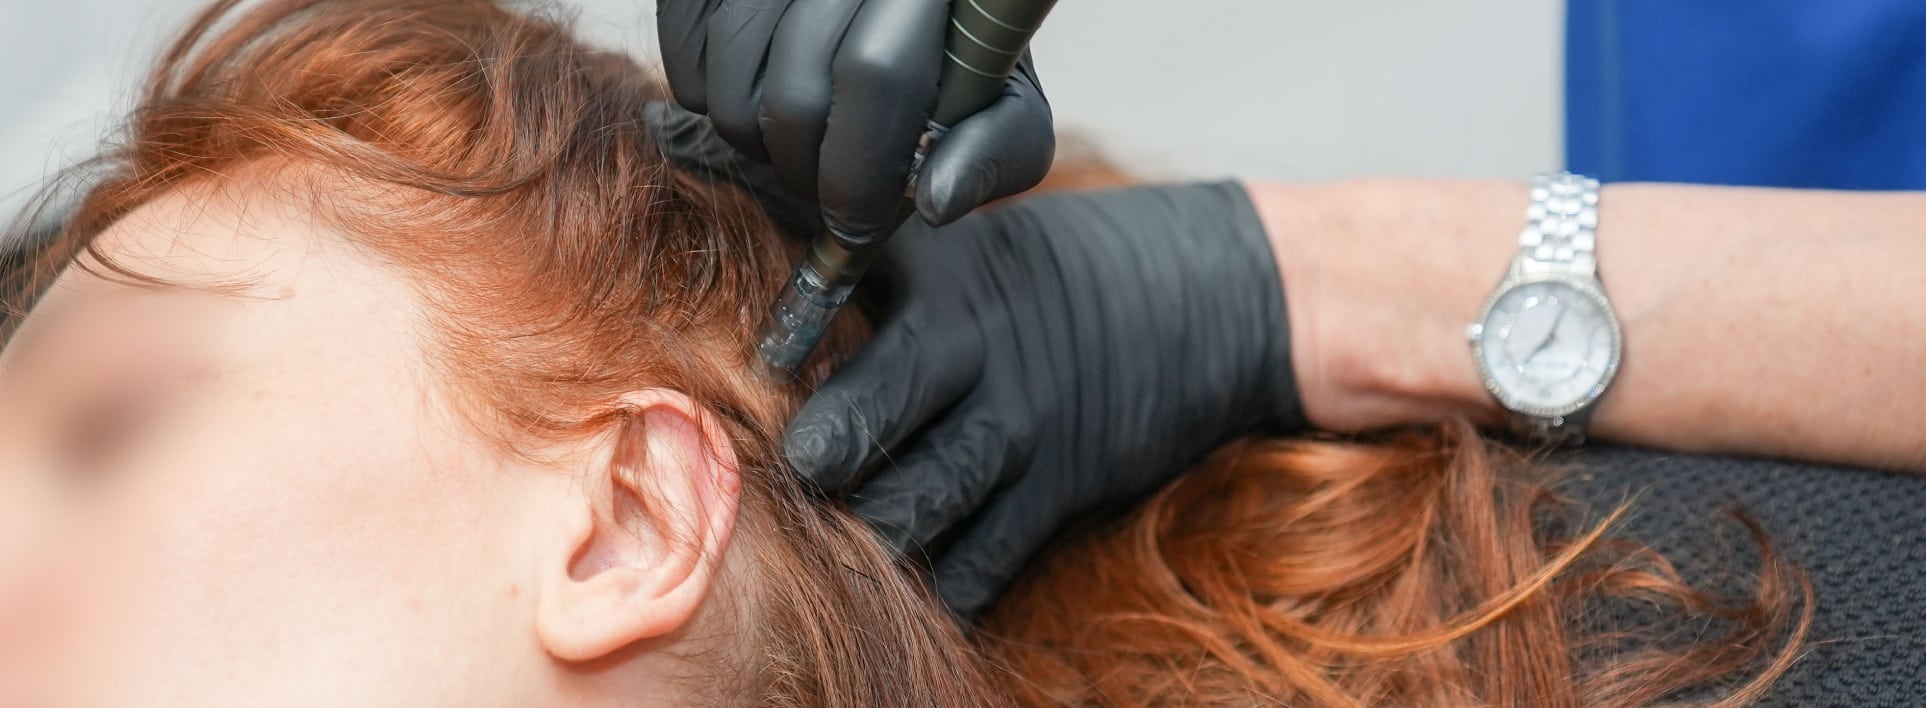 Femme subit le traitement prp microneedling au cheveux au centre esthetique et laser Tremoille de paris 8